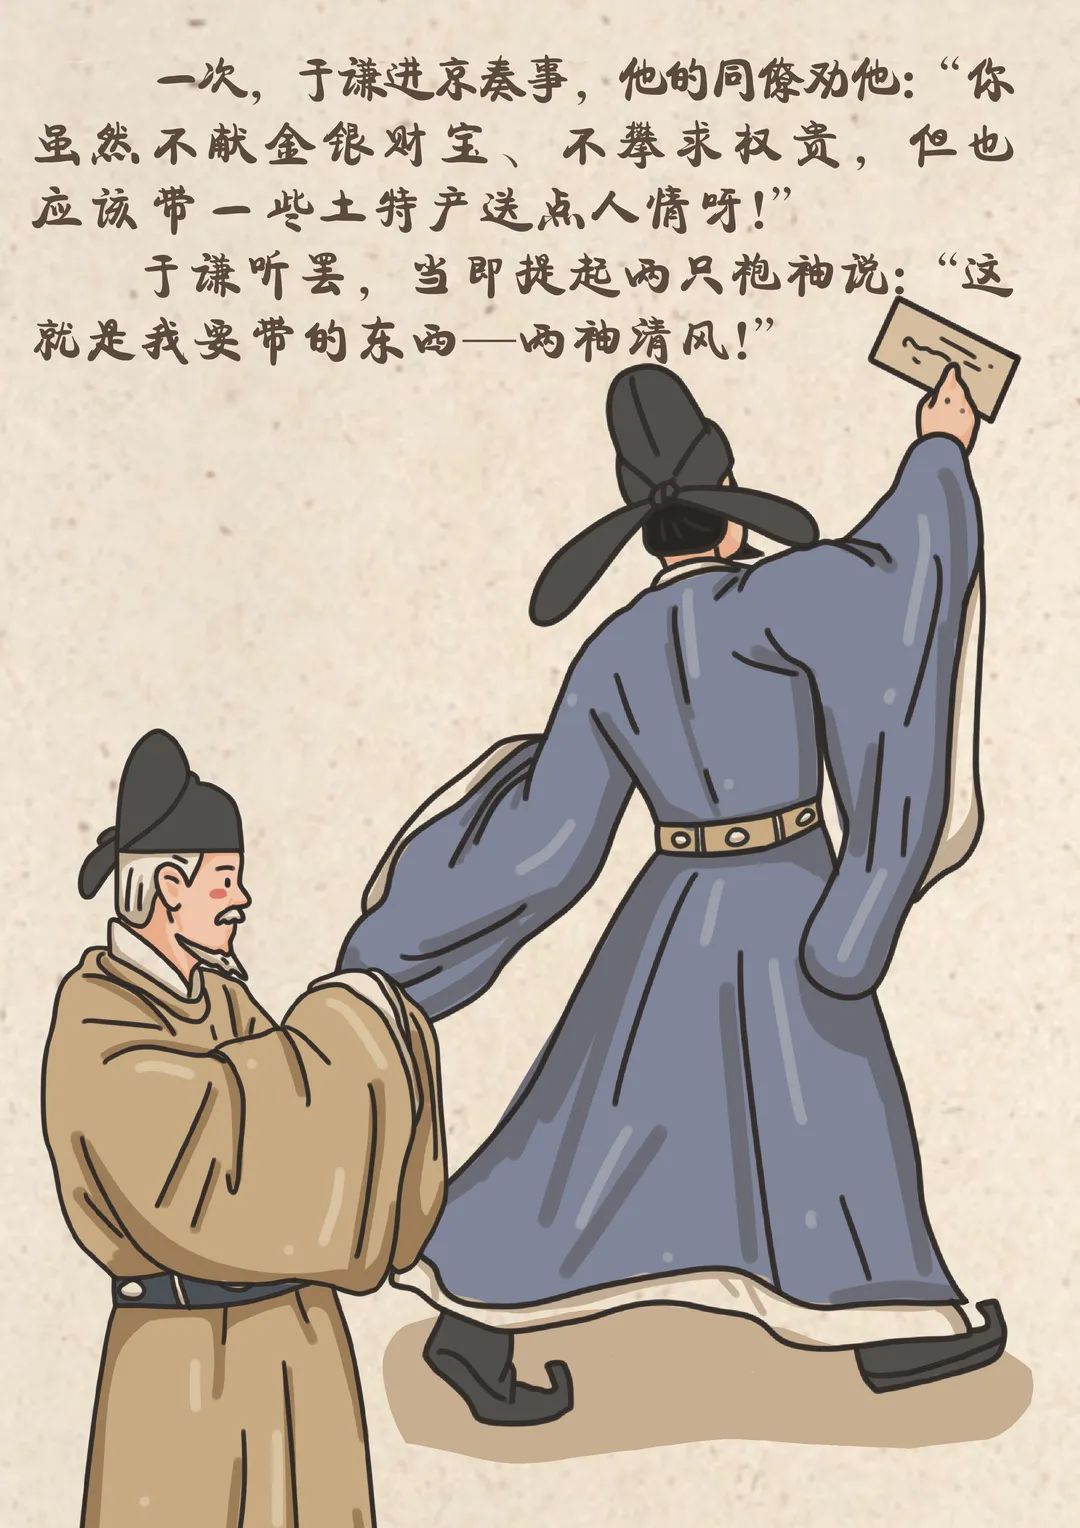 于谦(画像)，钱塘(今杭州)人，明朝名将。在北京保卫战中，以兵部尚书职统军击败瓦刺军。有《于忠肃集》-军事史-图片